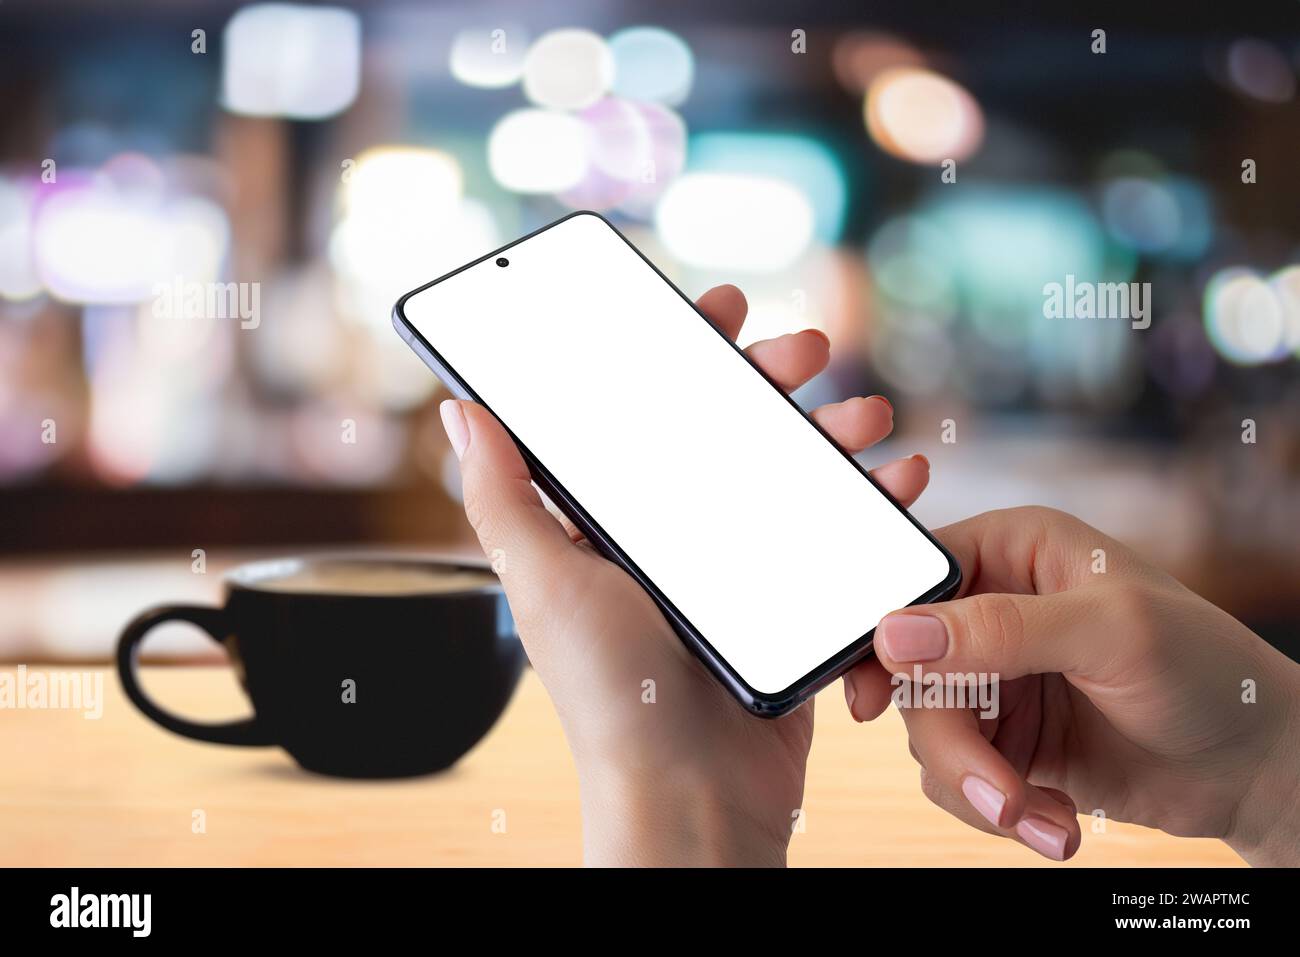 Smartphone-Mockup in den Händen mit Kaffeetasse auf dem Tisch für ein gemütliches Coffee Time-Lesekonzept. Perfekt für die Präsentation digitaler Inhalte im Handumdrehen Stockfoto